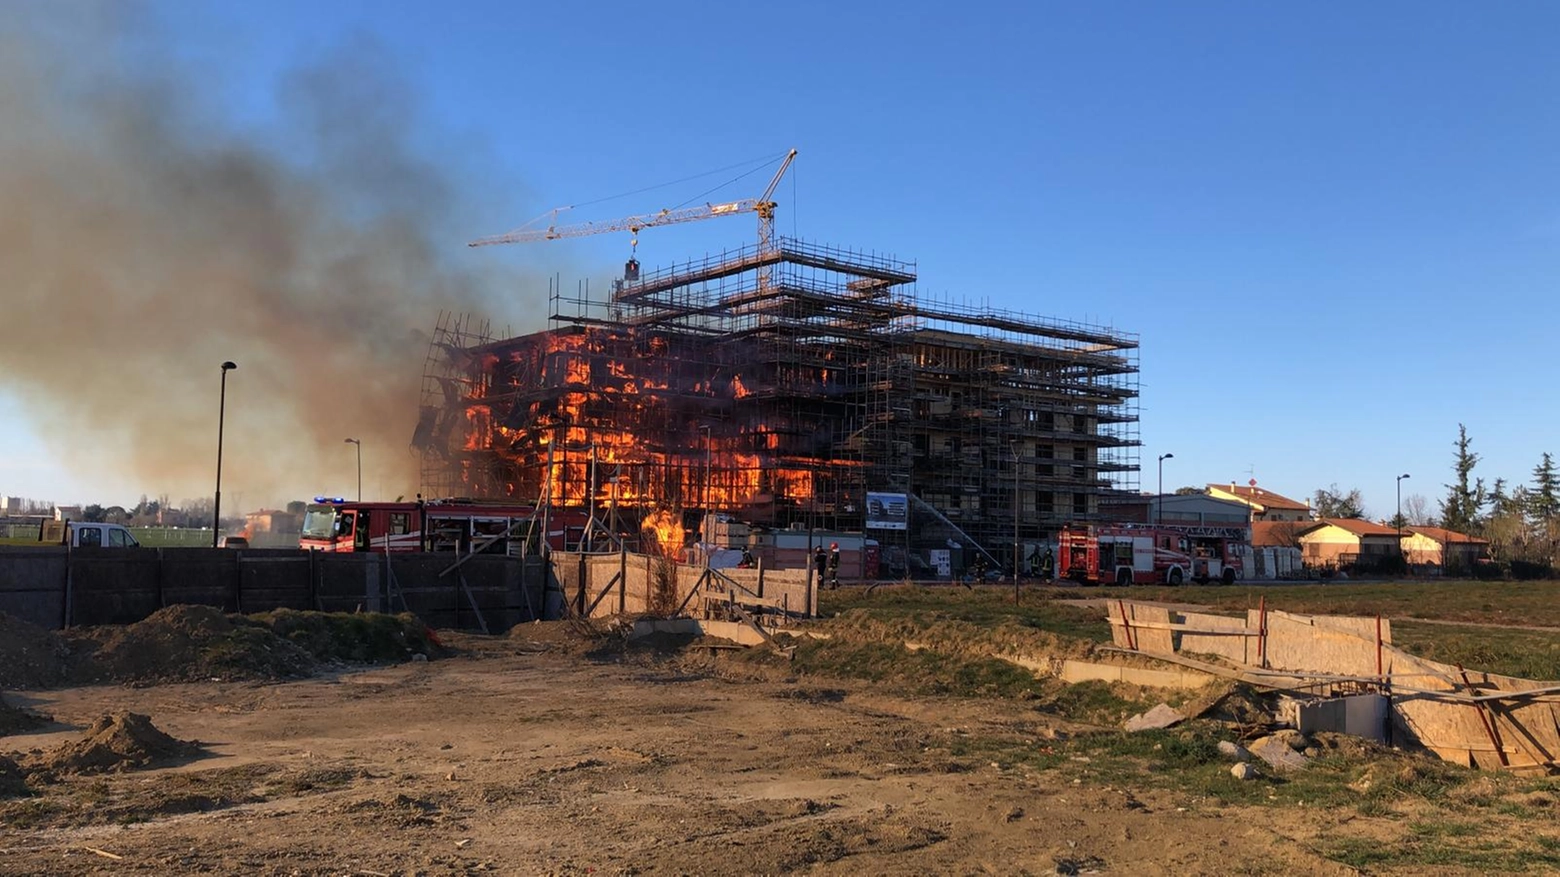 Incendio in un cantiere a Castenaso 